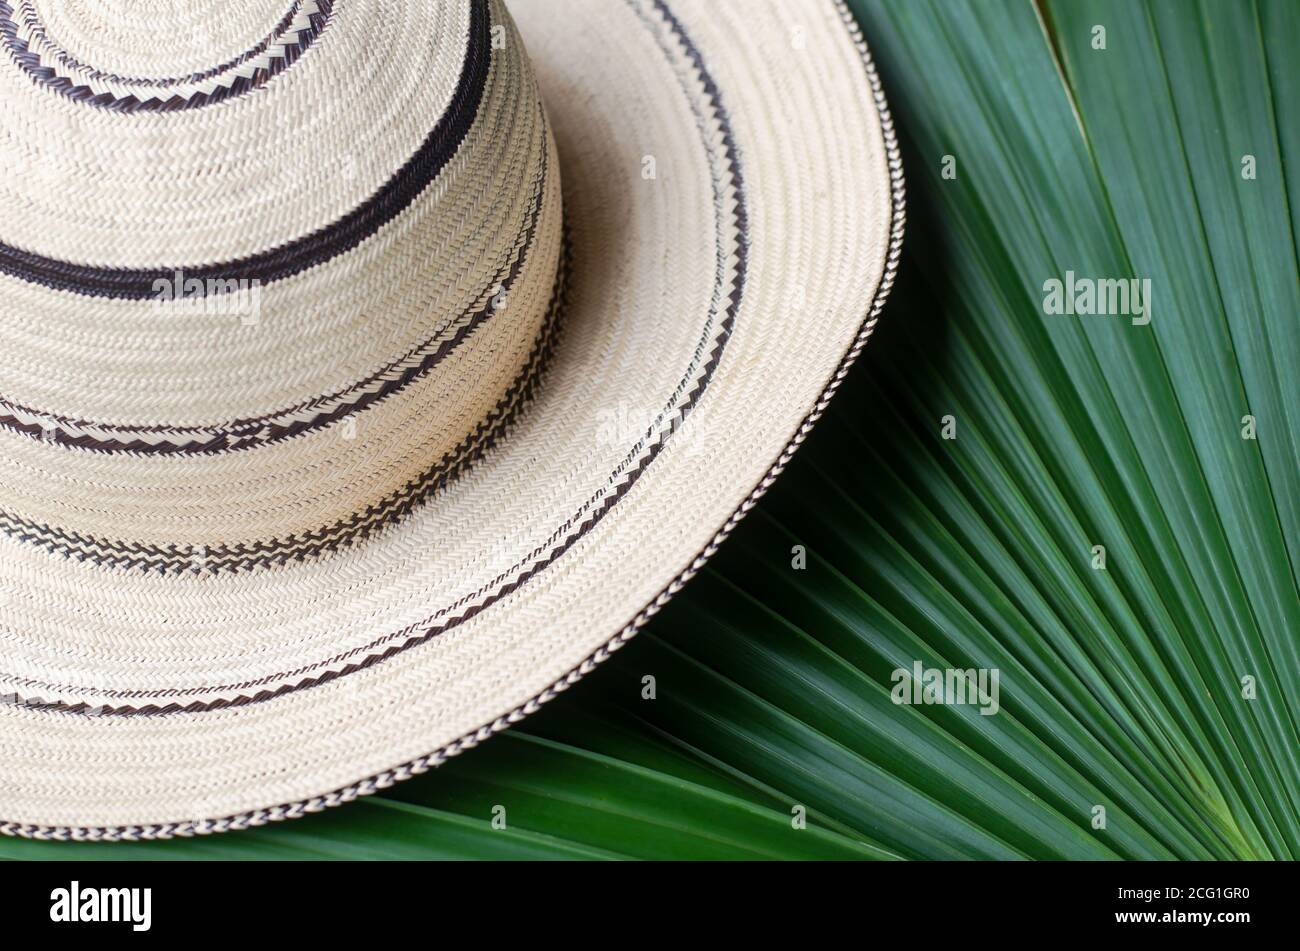 Panamaische Hüte sind handgefertigt mit einer Vielzahl von Techniken, um die natürlichen Fasern der Toquilla-Palme "Carludovica palmata" zu verarbeiten. Stockfoto